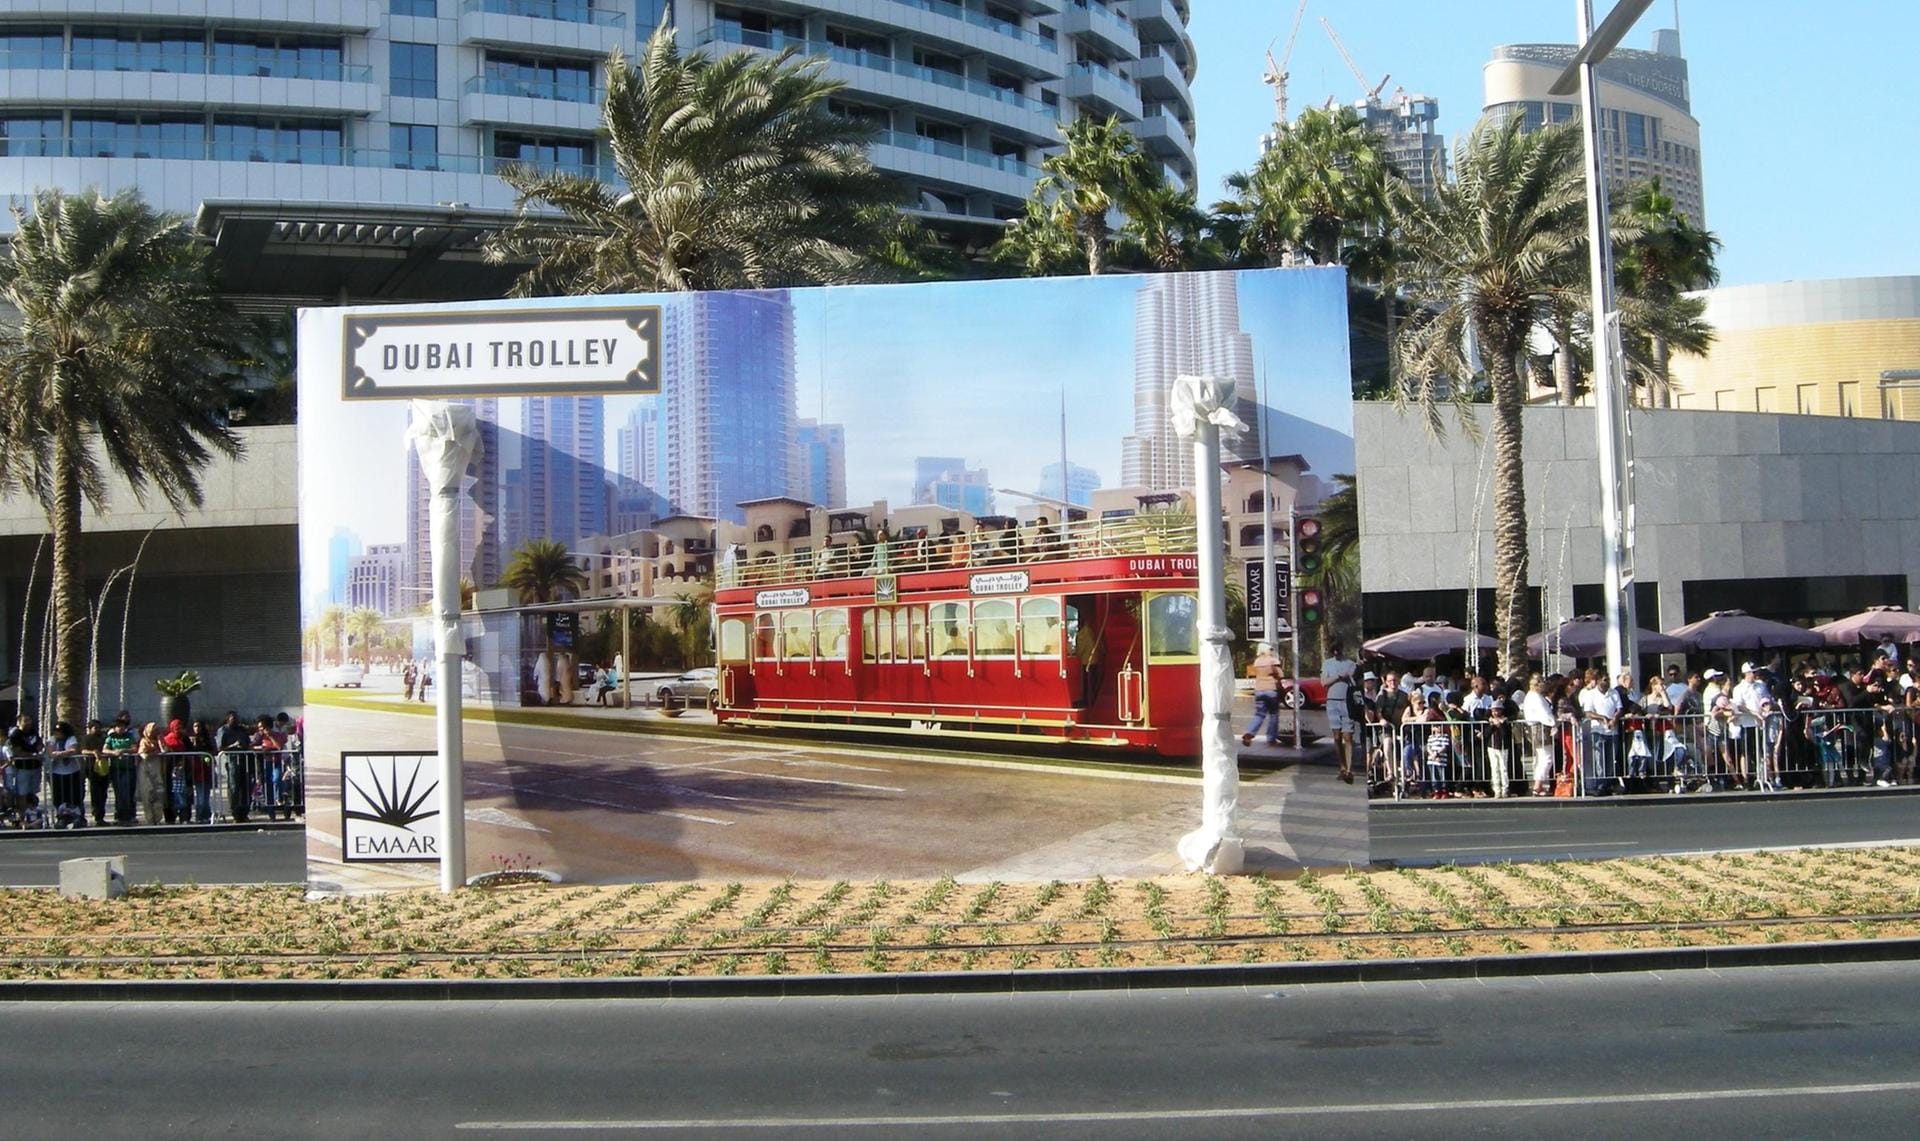 Der Dubai Trolley ist eine offene Trambahn in der Nähe von Burj Khalifa und Dubai Mall, die seit 2015 eine Flotte von Doppeldeckerfahrzeugen im historischen Stil einsetzt.